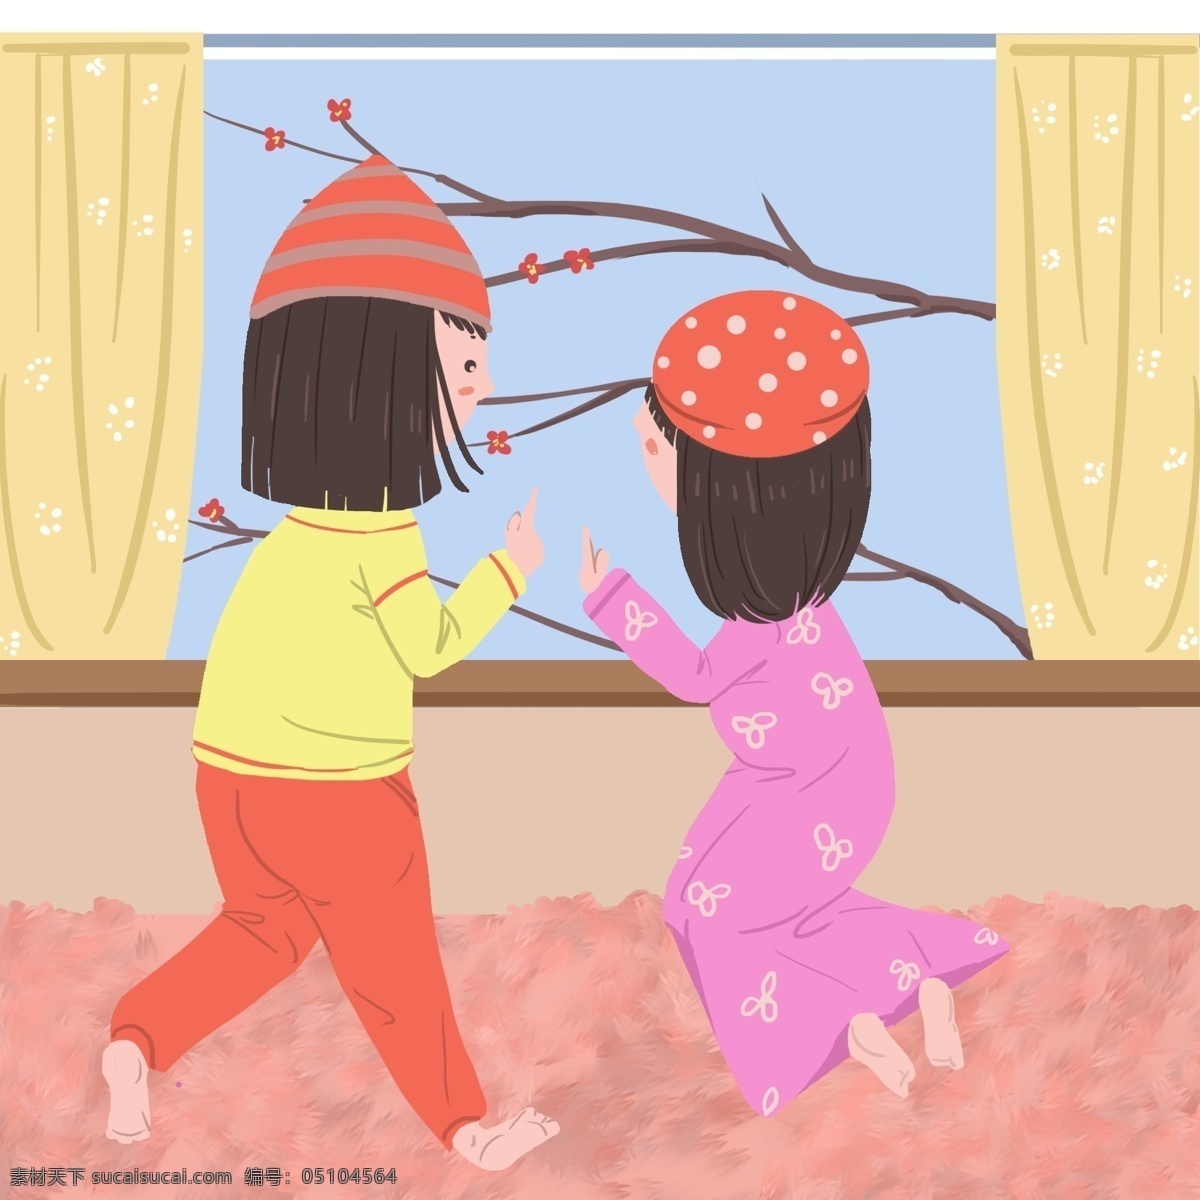 两个 女孩 被窝 里 看 风景 冬天 冬季 小清新插图 窗外的风景 穿着 睡衣 点点红梅 冬天的清晨 粉色